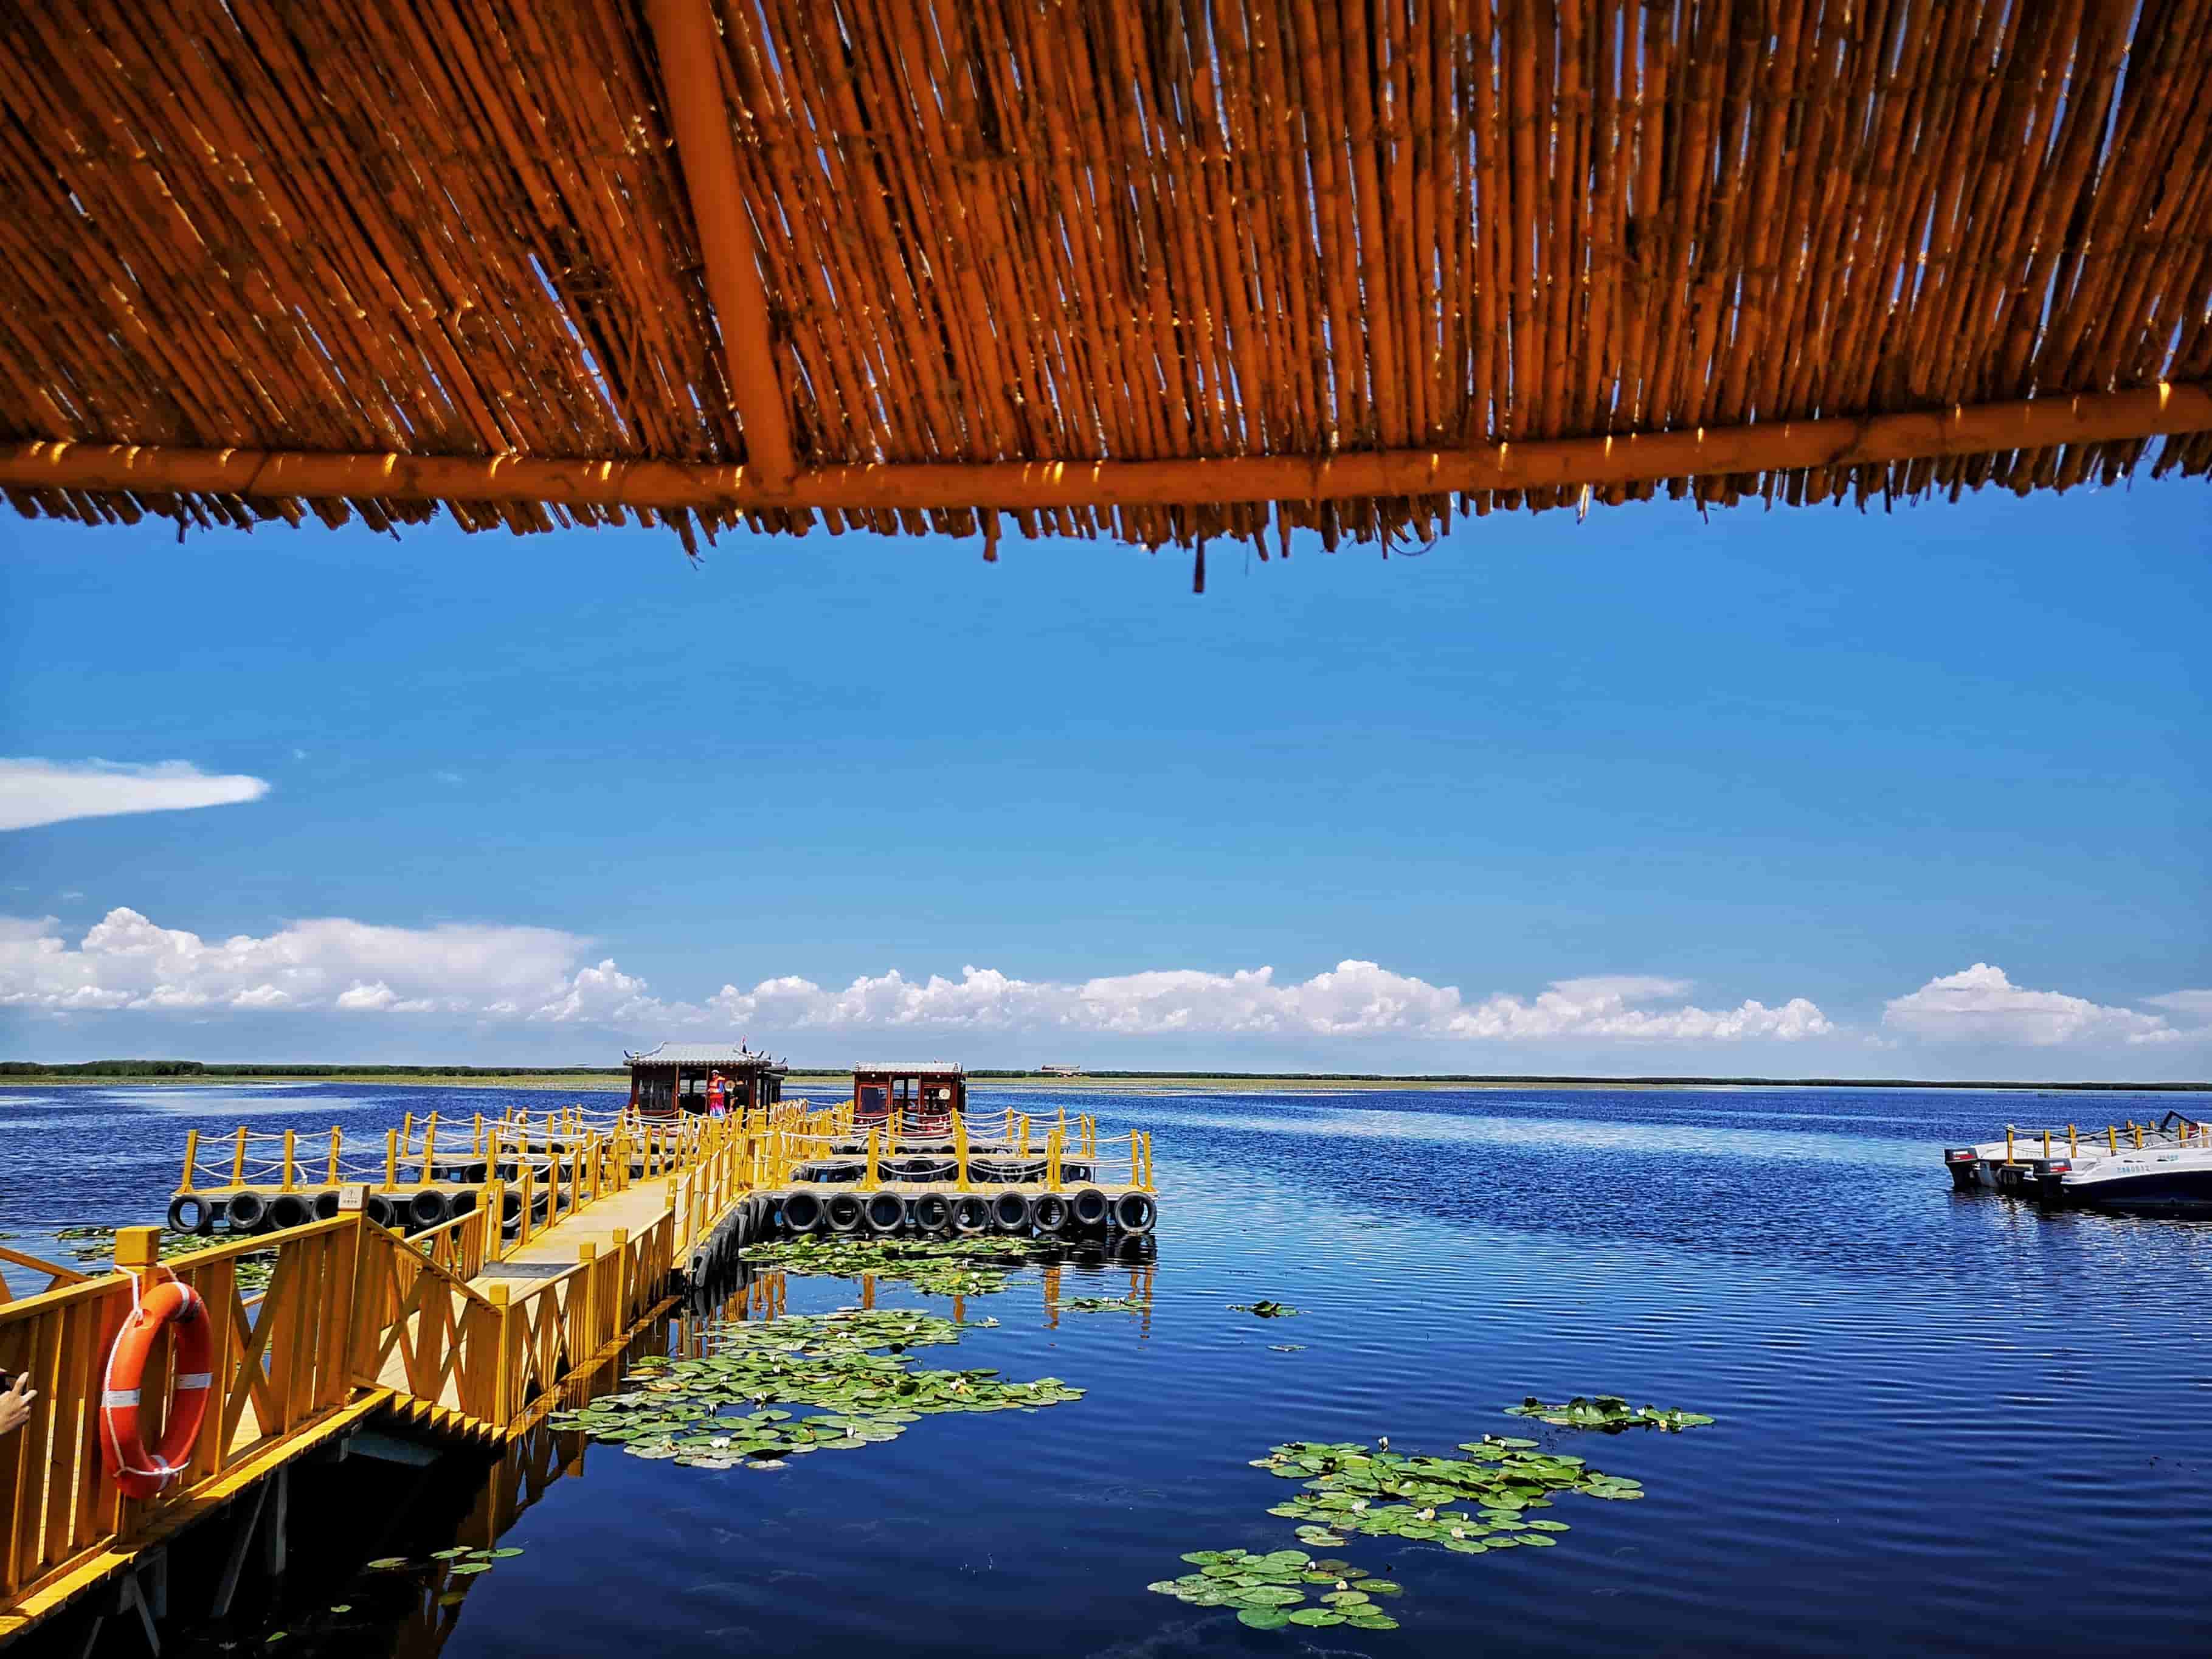 博斯腾湖内莲花湖:博斯腾湖景区莲海世界整的个小湖区被芦苇台田,睡莲